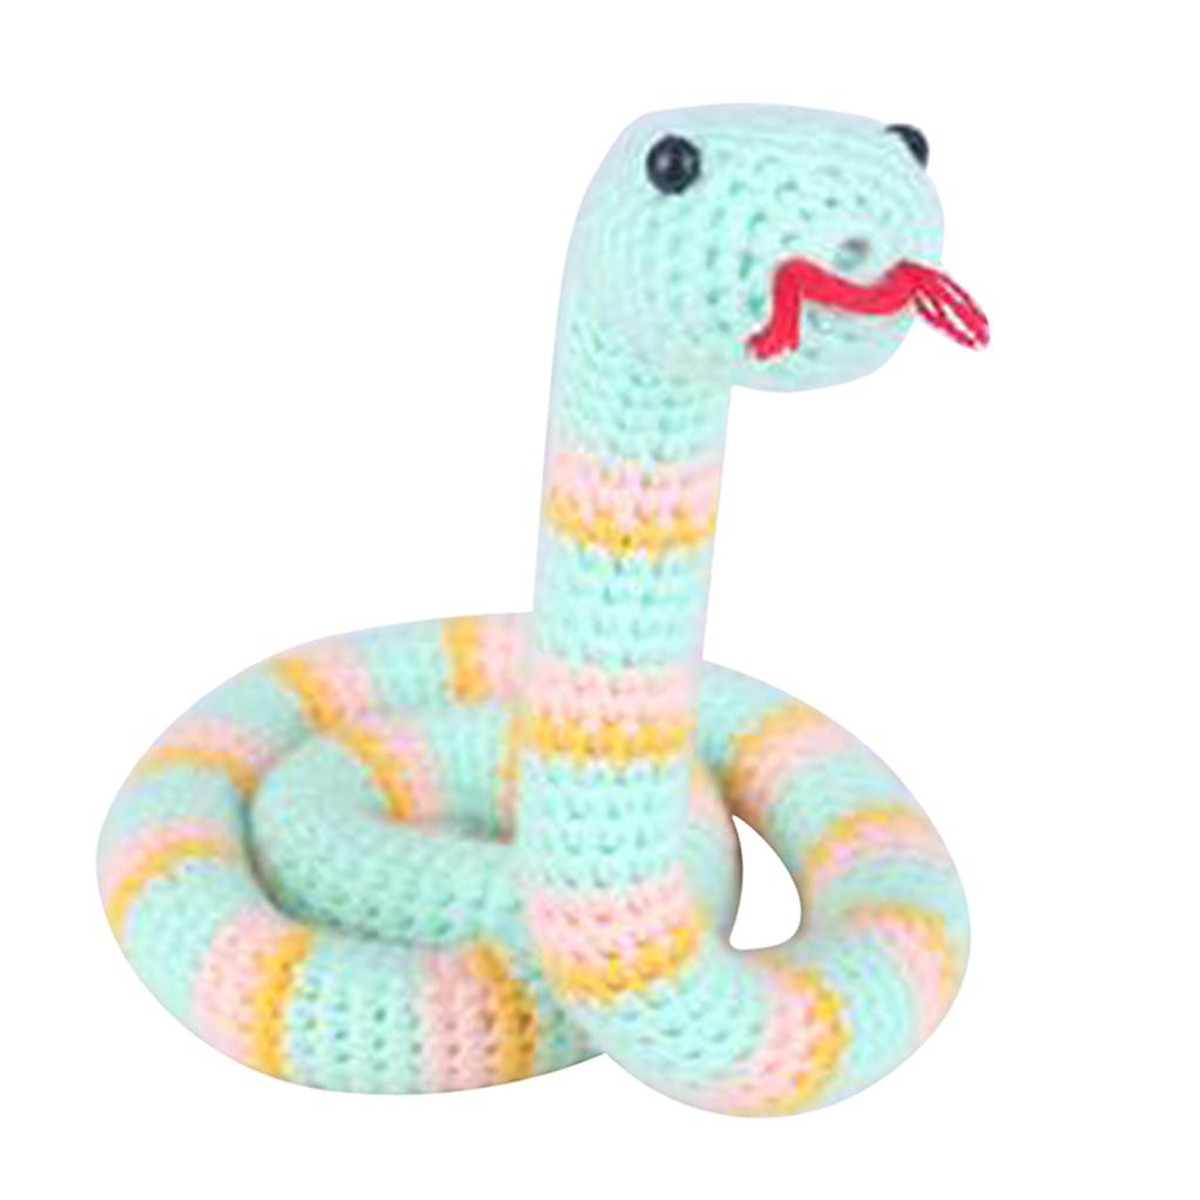 DIY Snake Crochet Kit for Teens Learn to Crochet Animal Stuffed ...